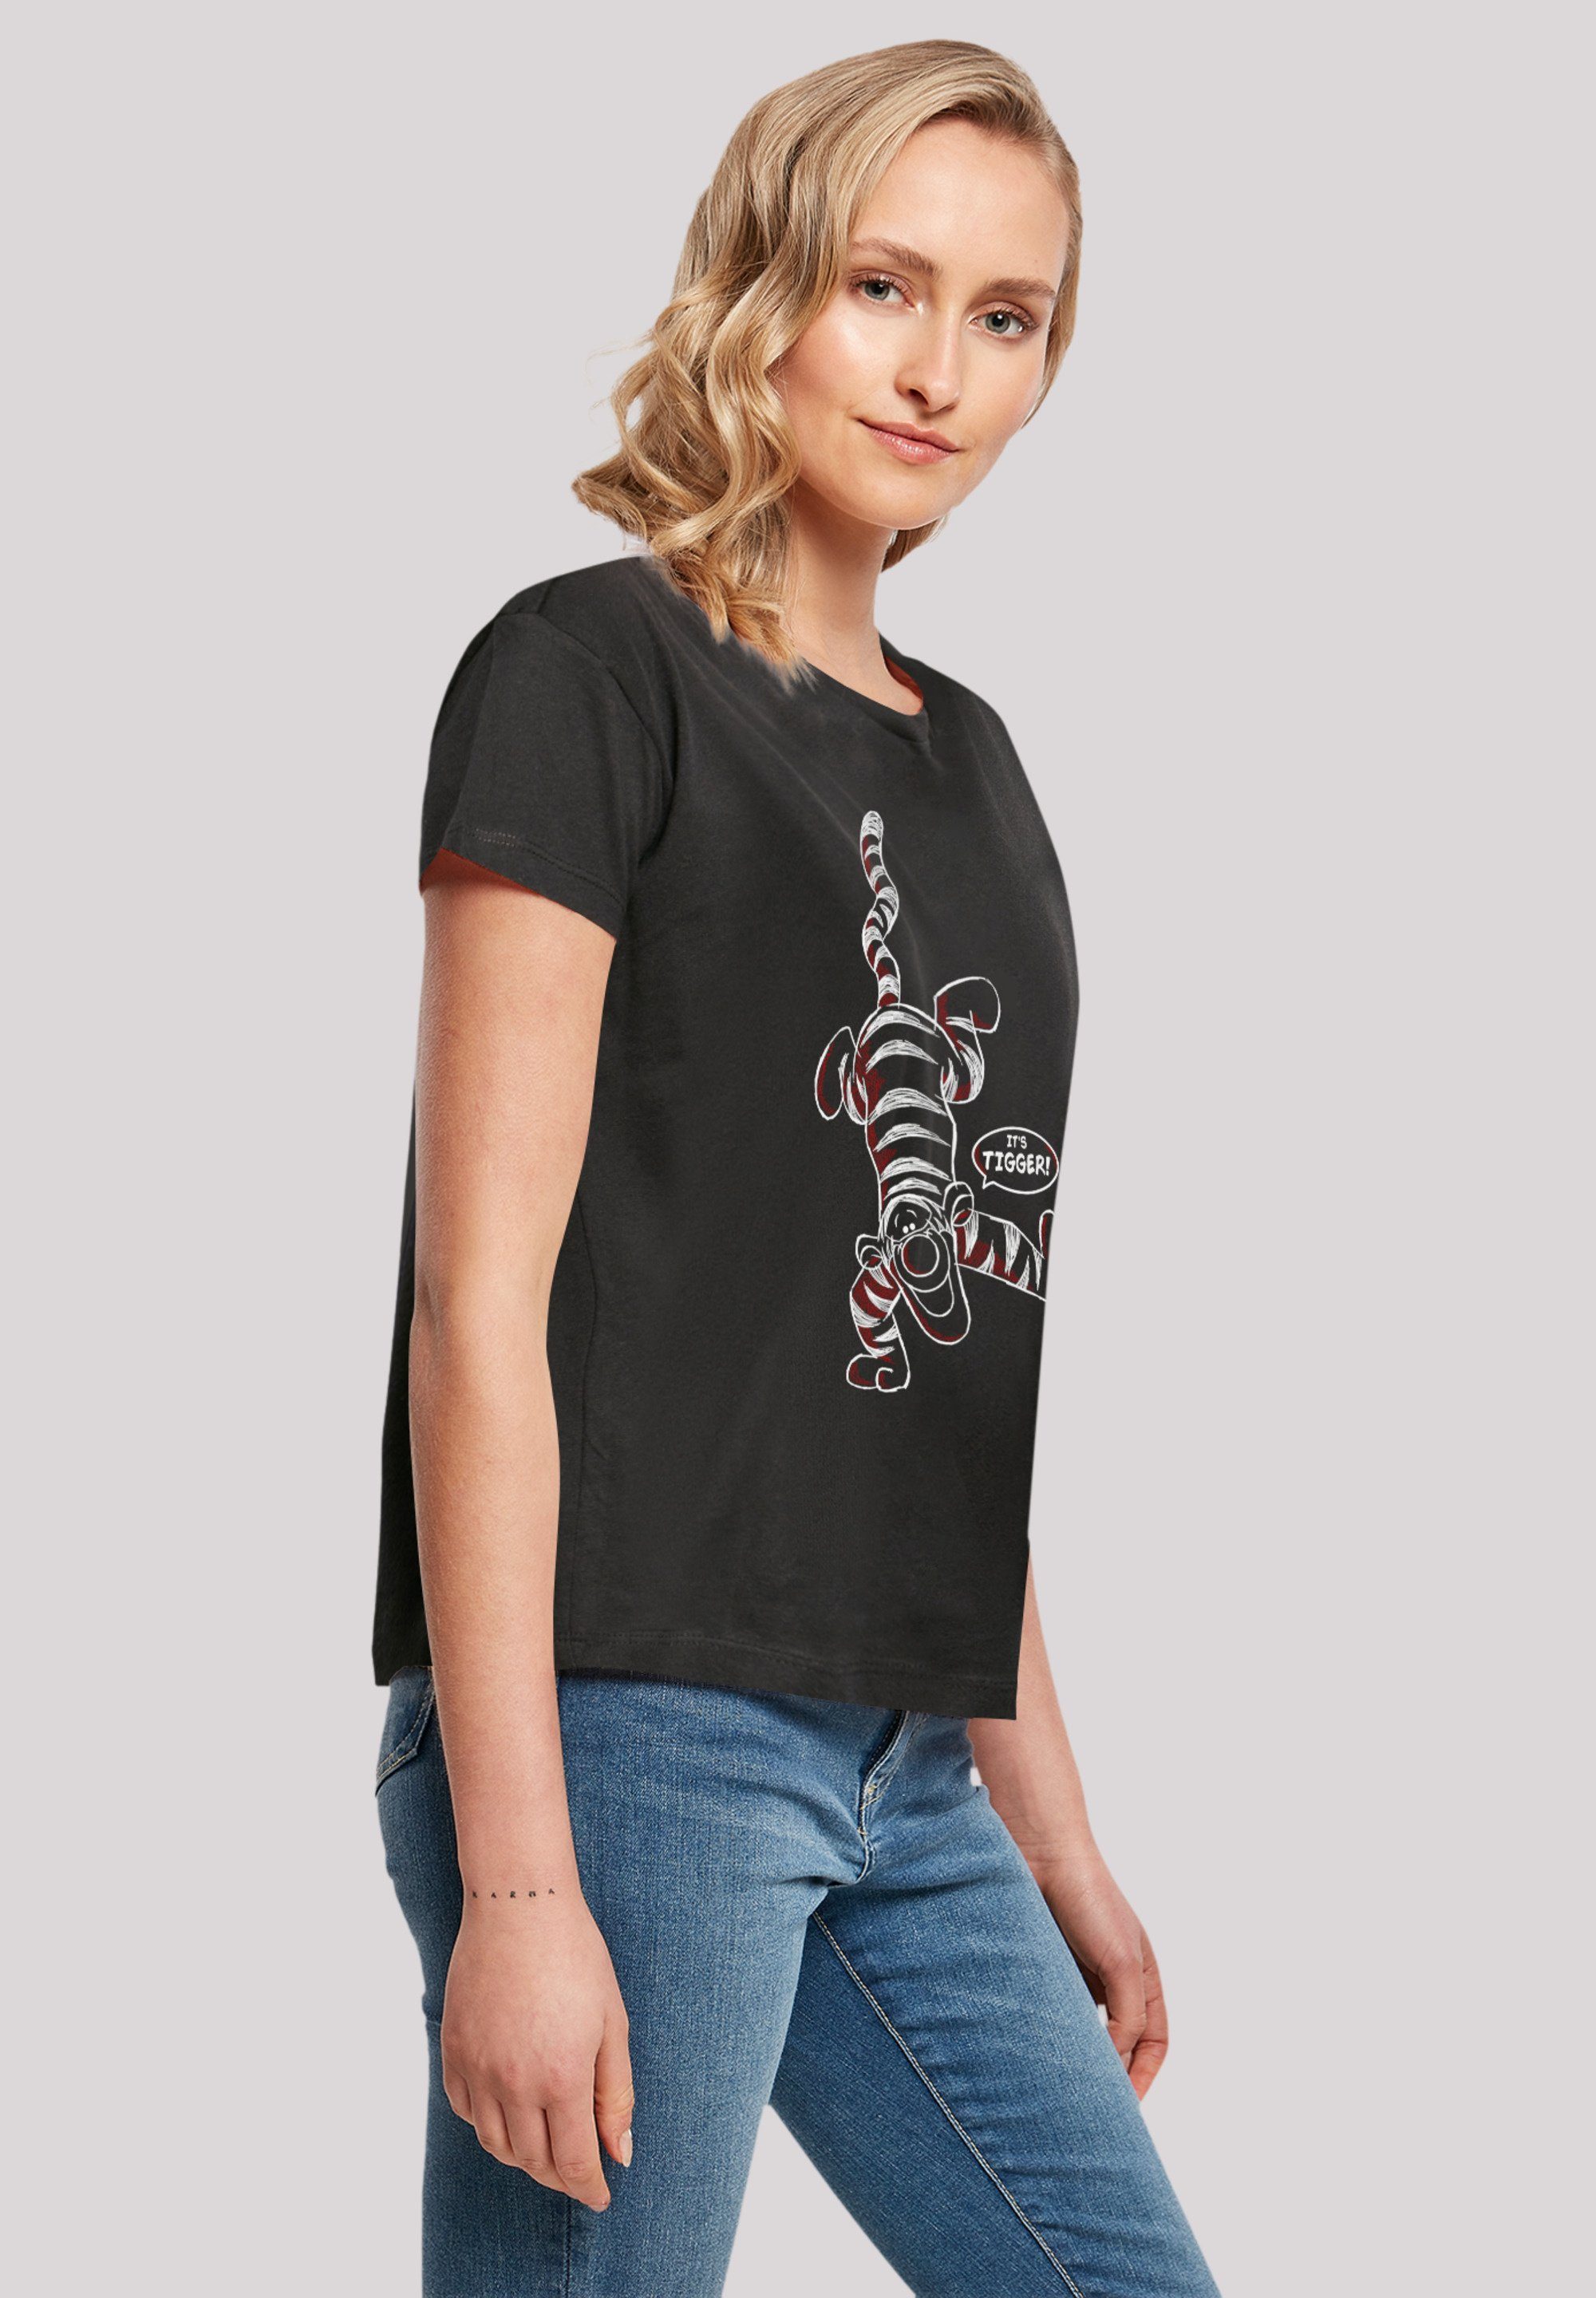 Puuh Winnie Tigger T-Shirt Qualität F4NT4STIC It’s Disney Premium